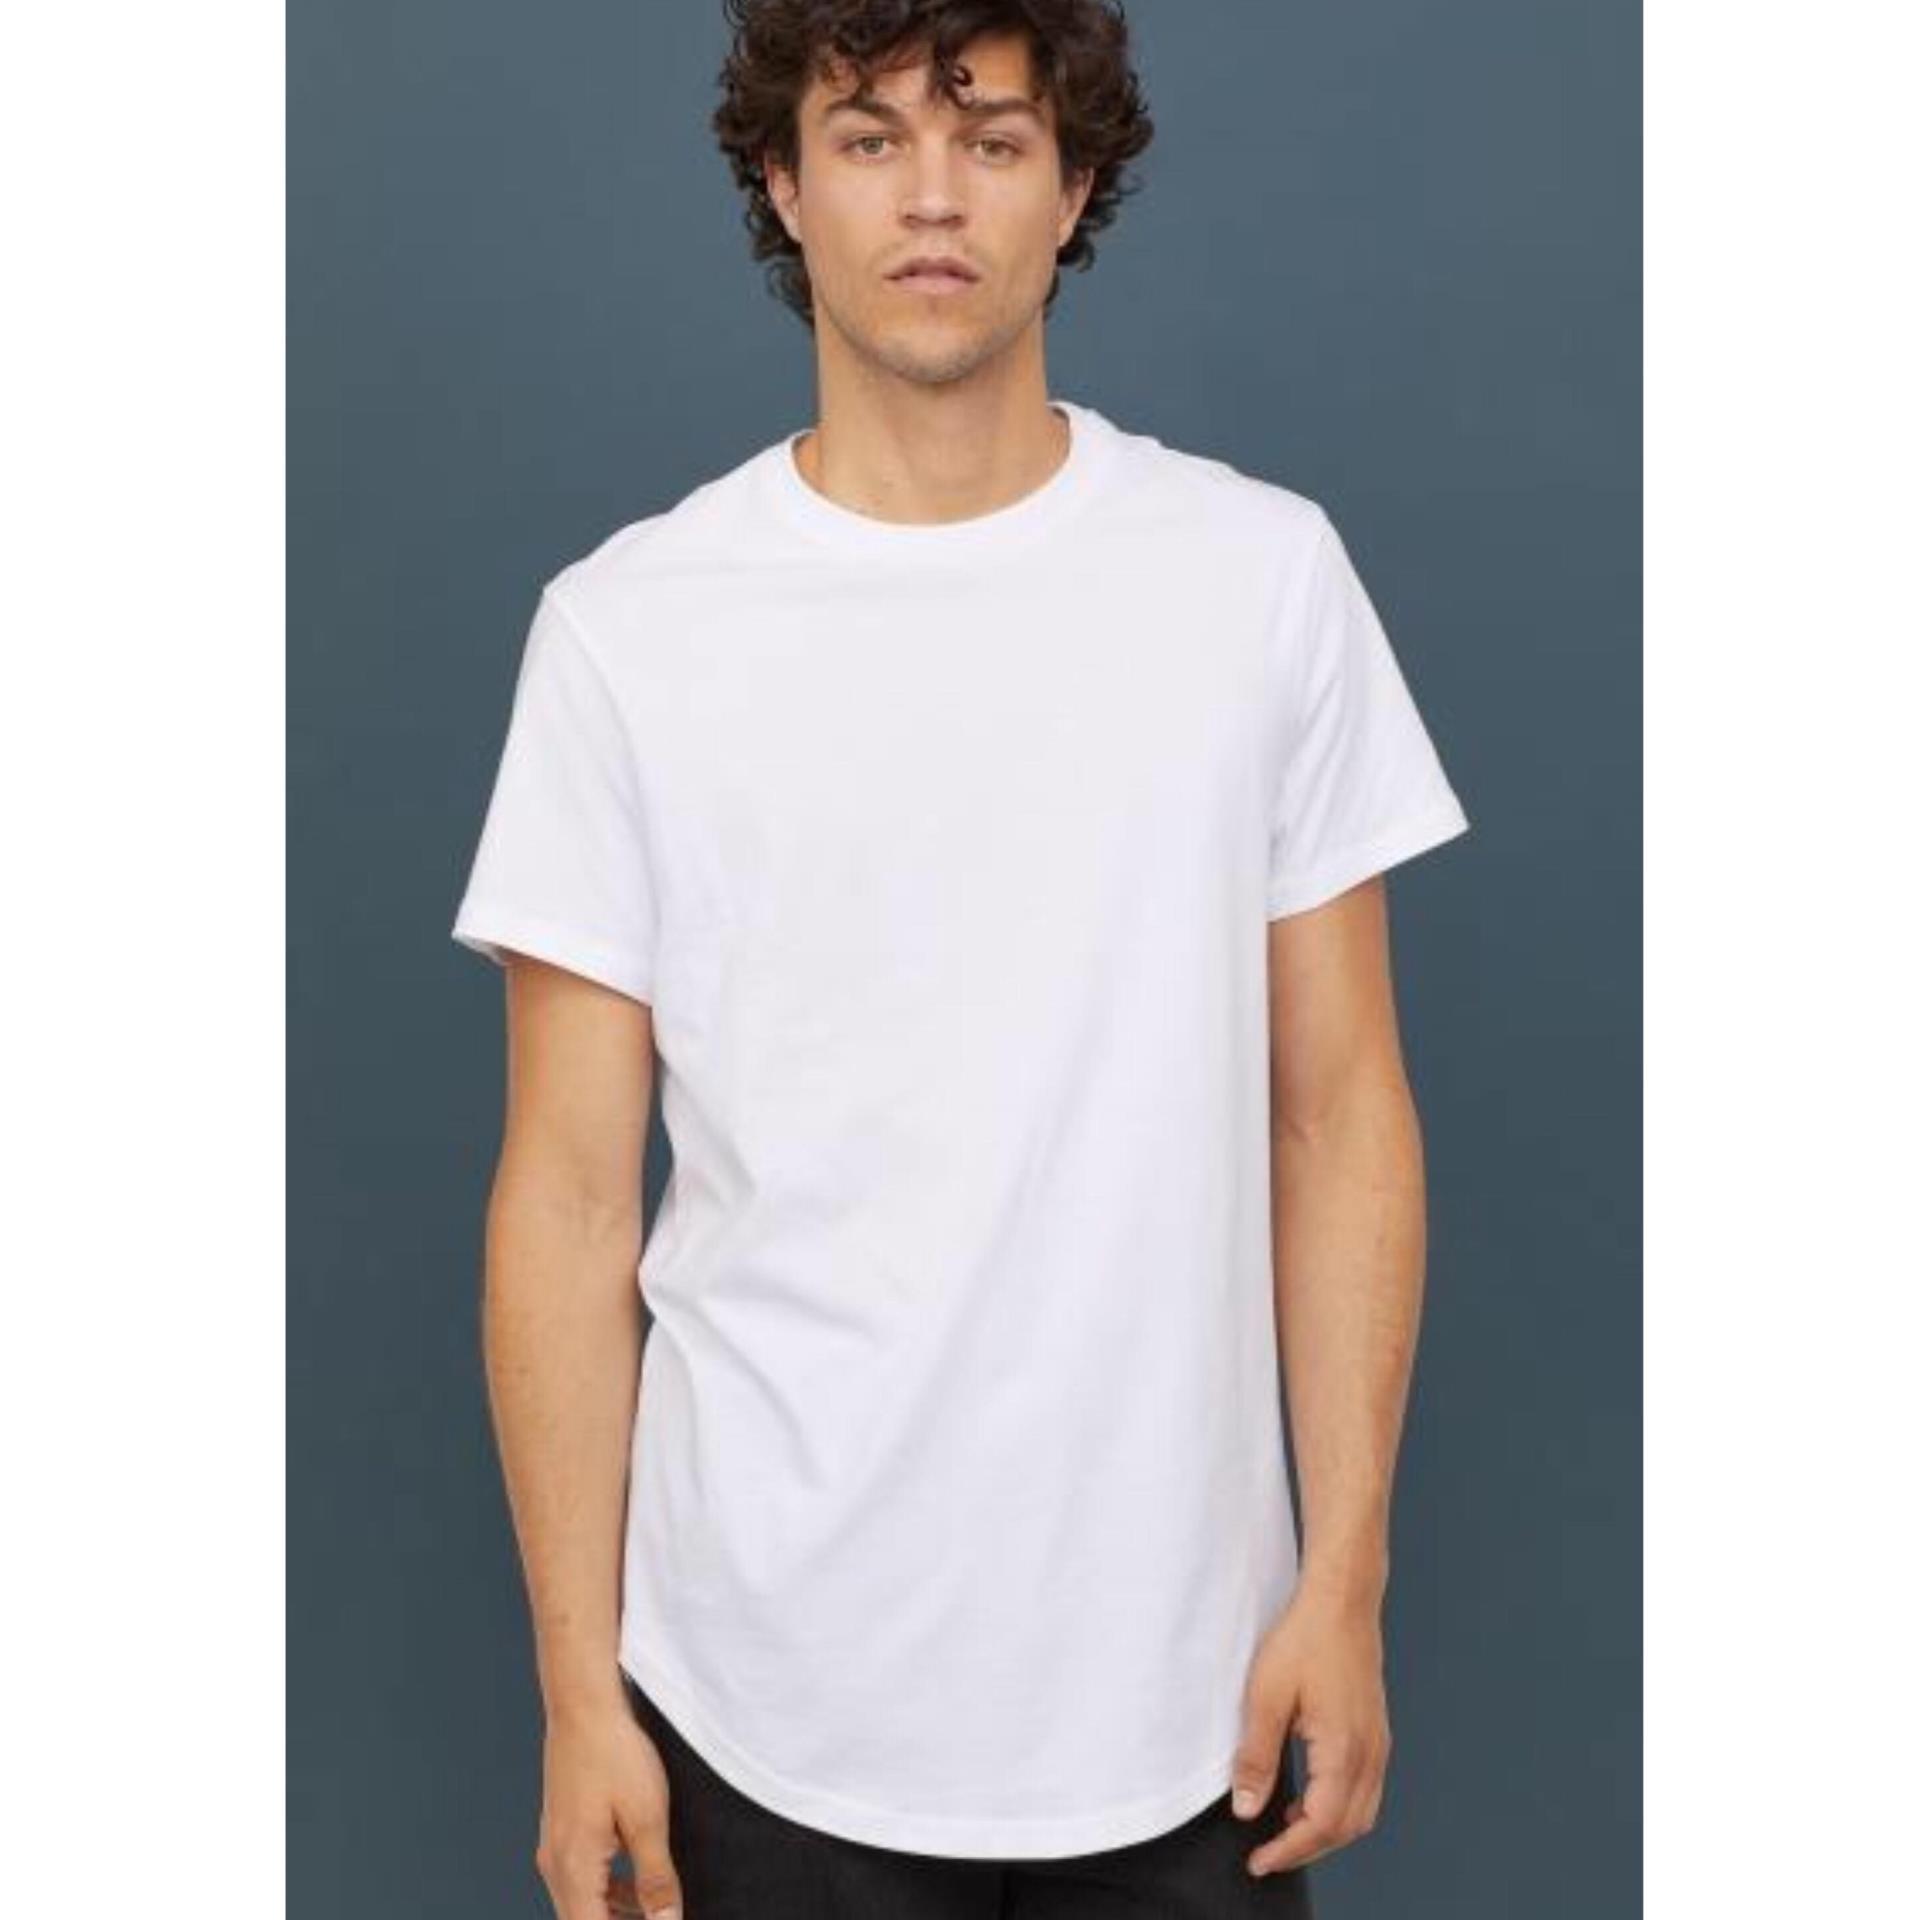 Áo phông trắng HM 2019: Nếu bạn đang tìm kiếm chiếc áo phông trắng mới nhất, chất lượng cao, đẳng cấp của HM năm 2019, hãy nhấp vào hình ảnh để khám phá những mẫu áo phông tuyệt vời này. Sự kết hợp của thiết kế đơn giản với chất liệu vải cao cấp sẽ khiến bạn không thể quên được chiếc áo này.